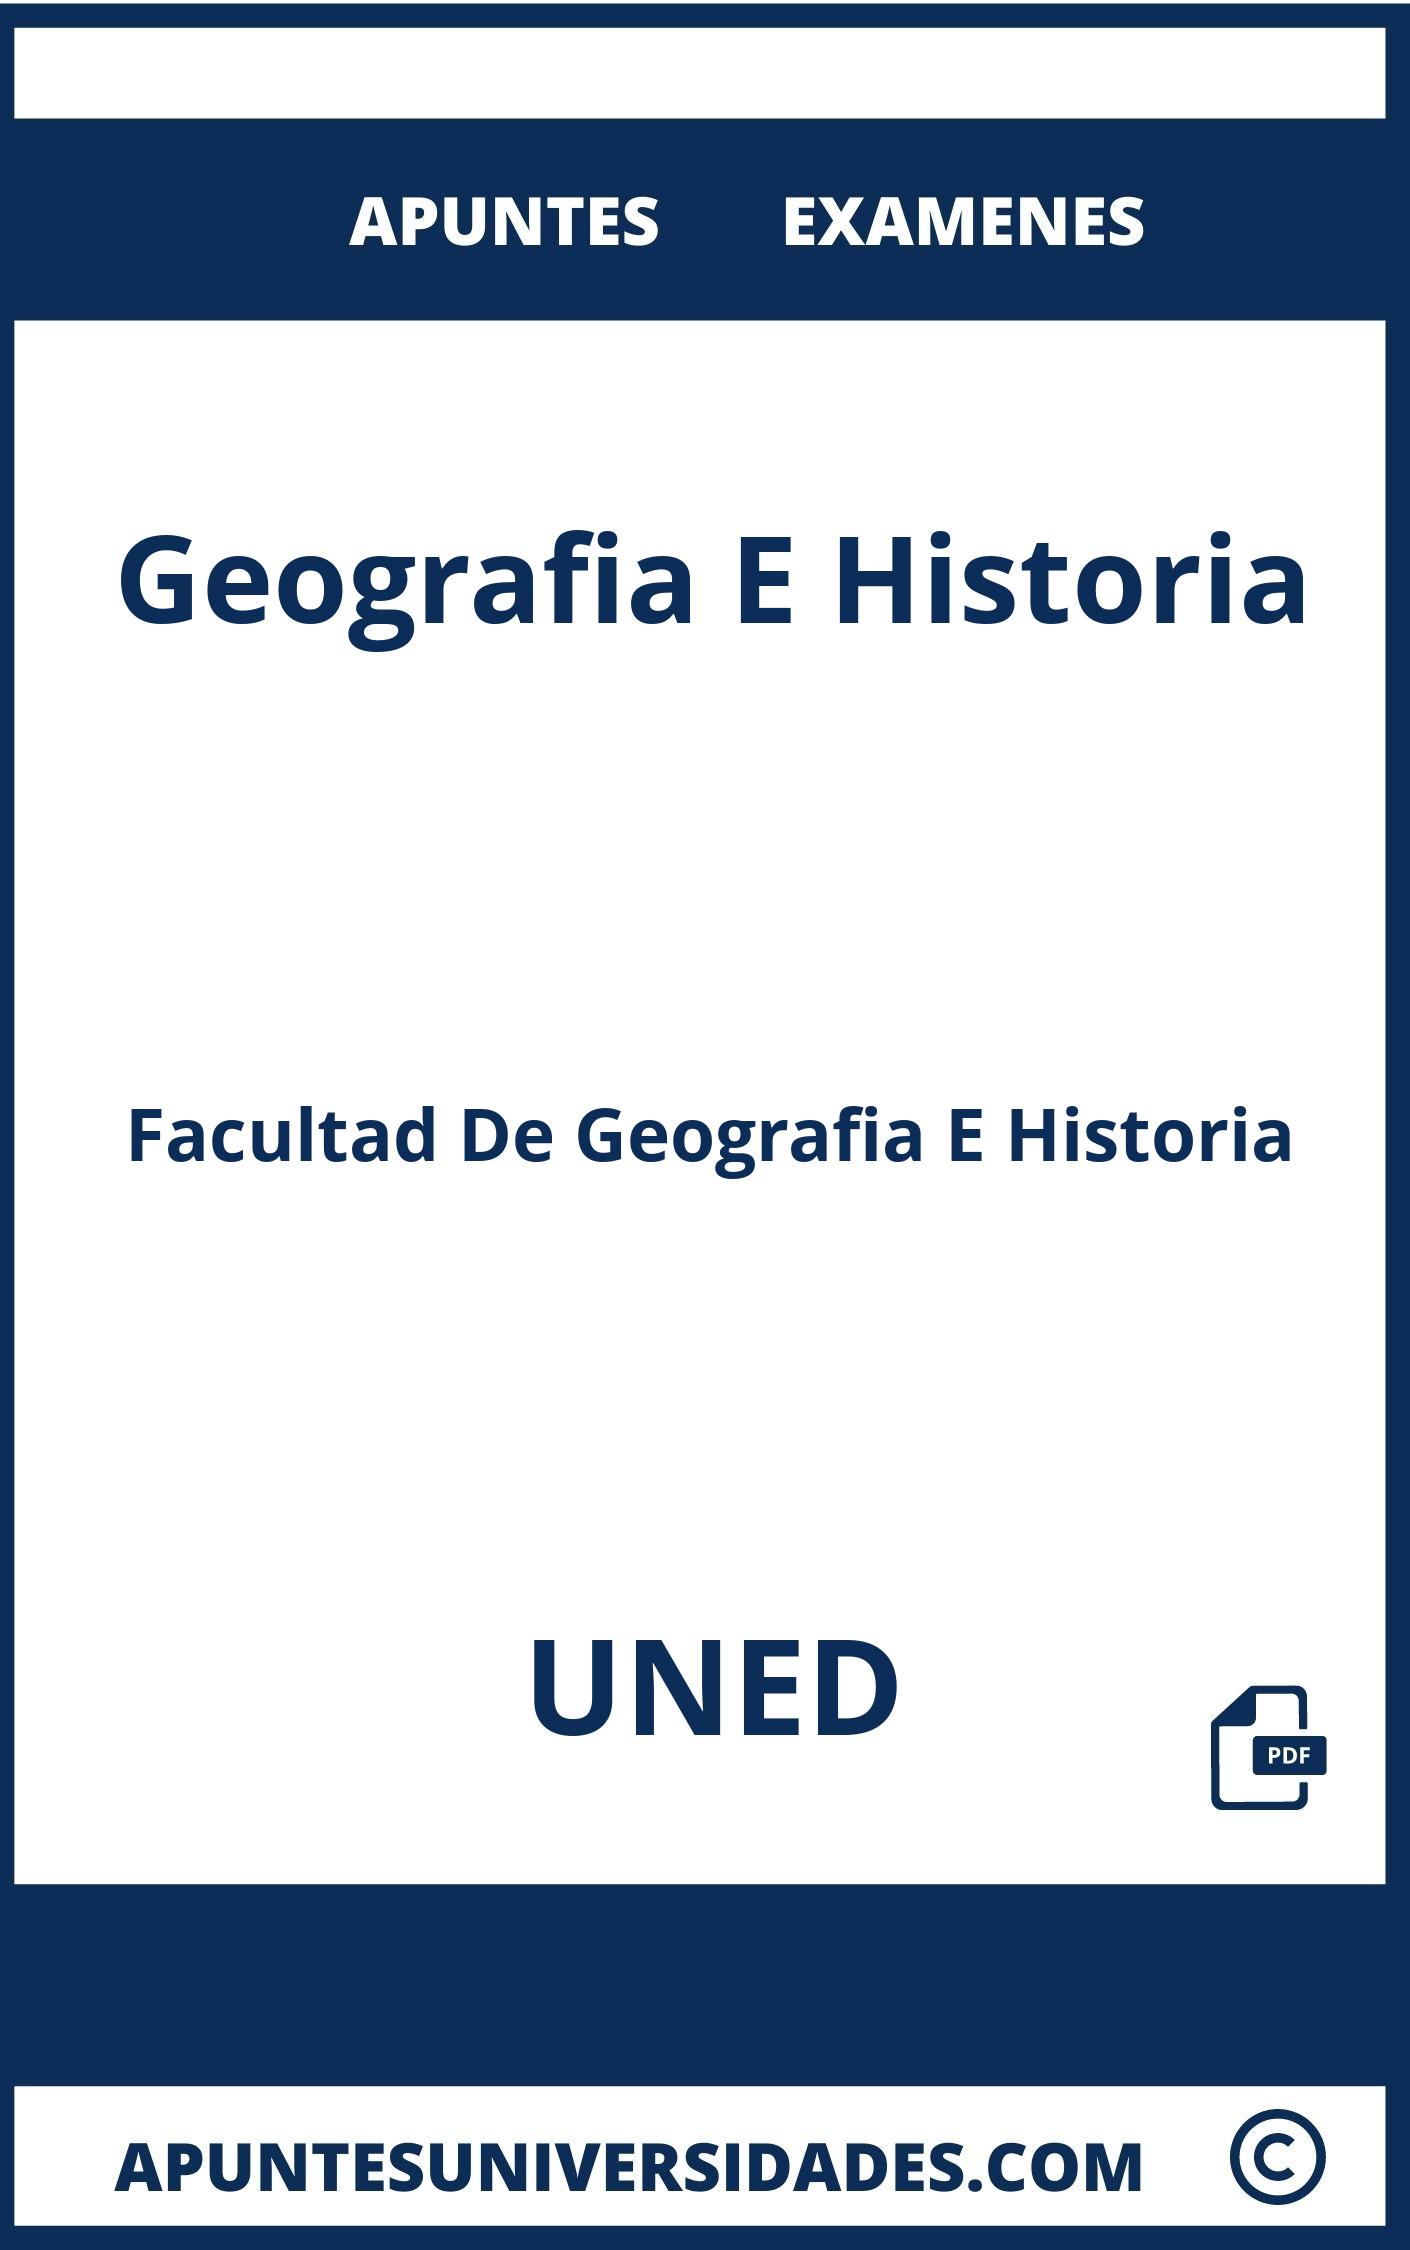 Examenes y Apuntes Geografia E Historia UNED